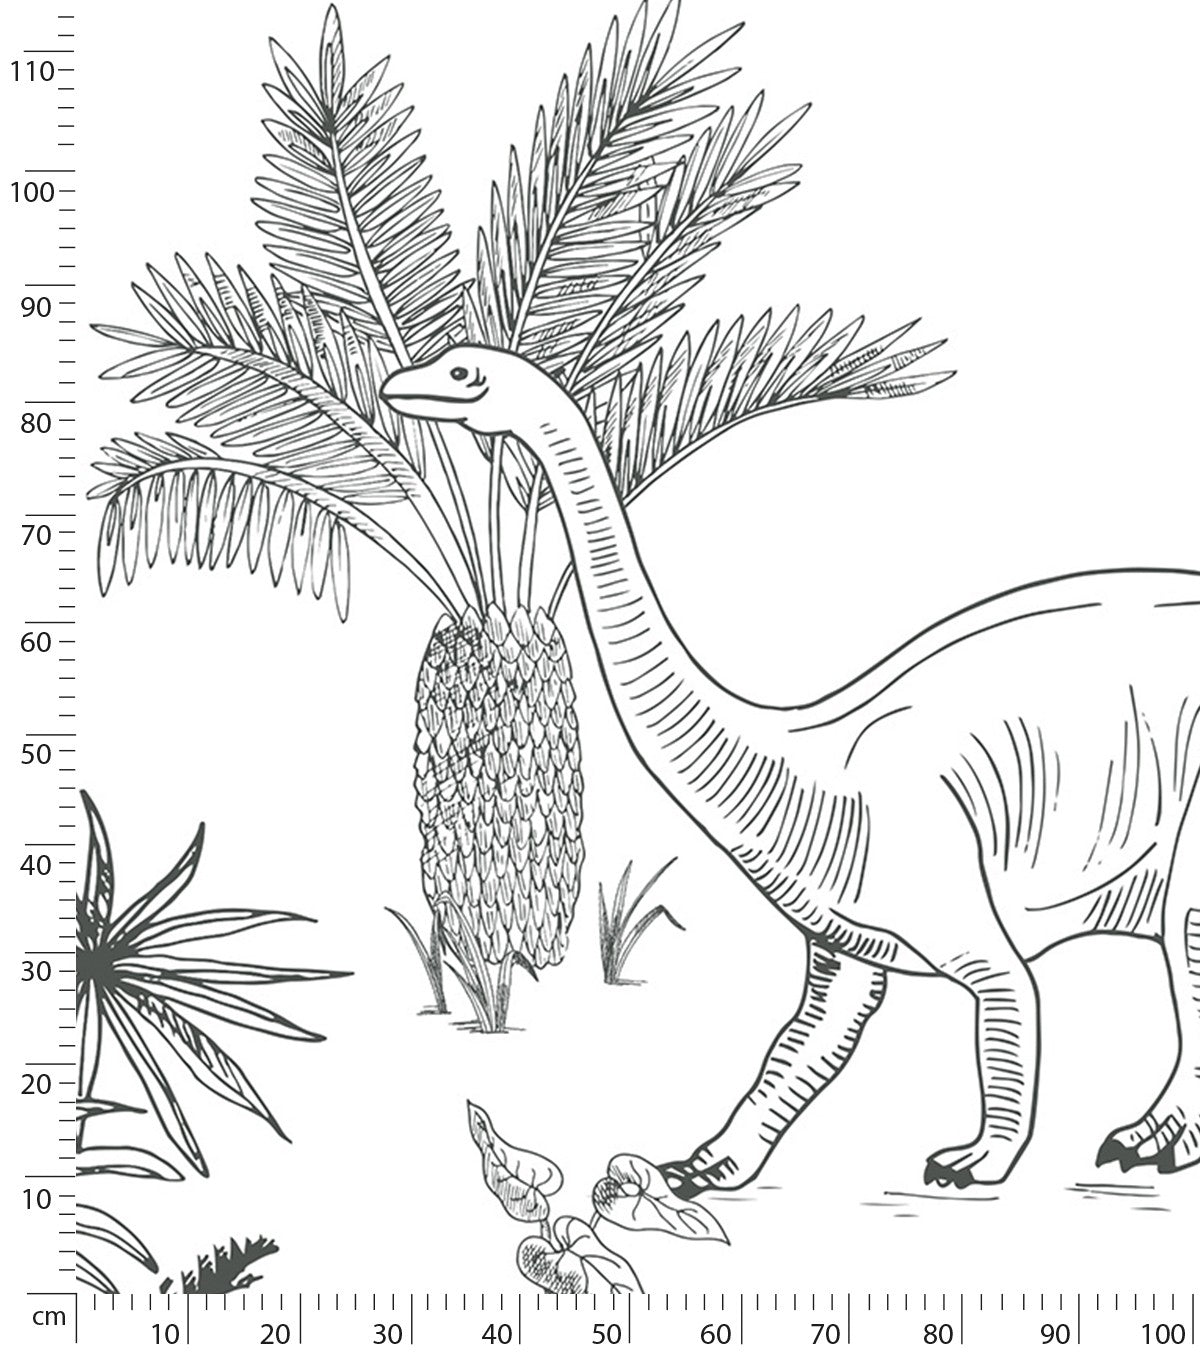 DINOSAURUS - Papel de parede panorâmico - Dinossauros